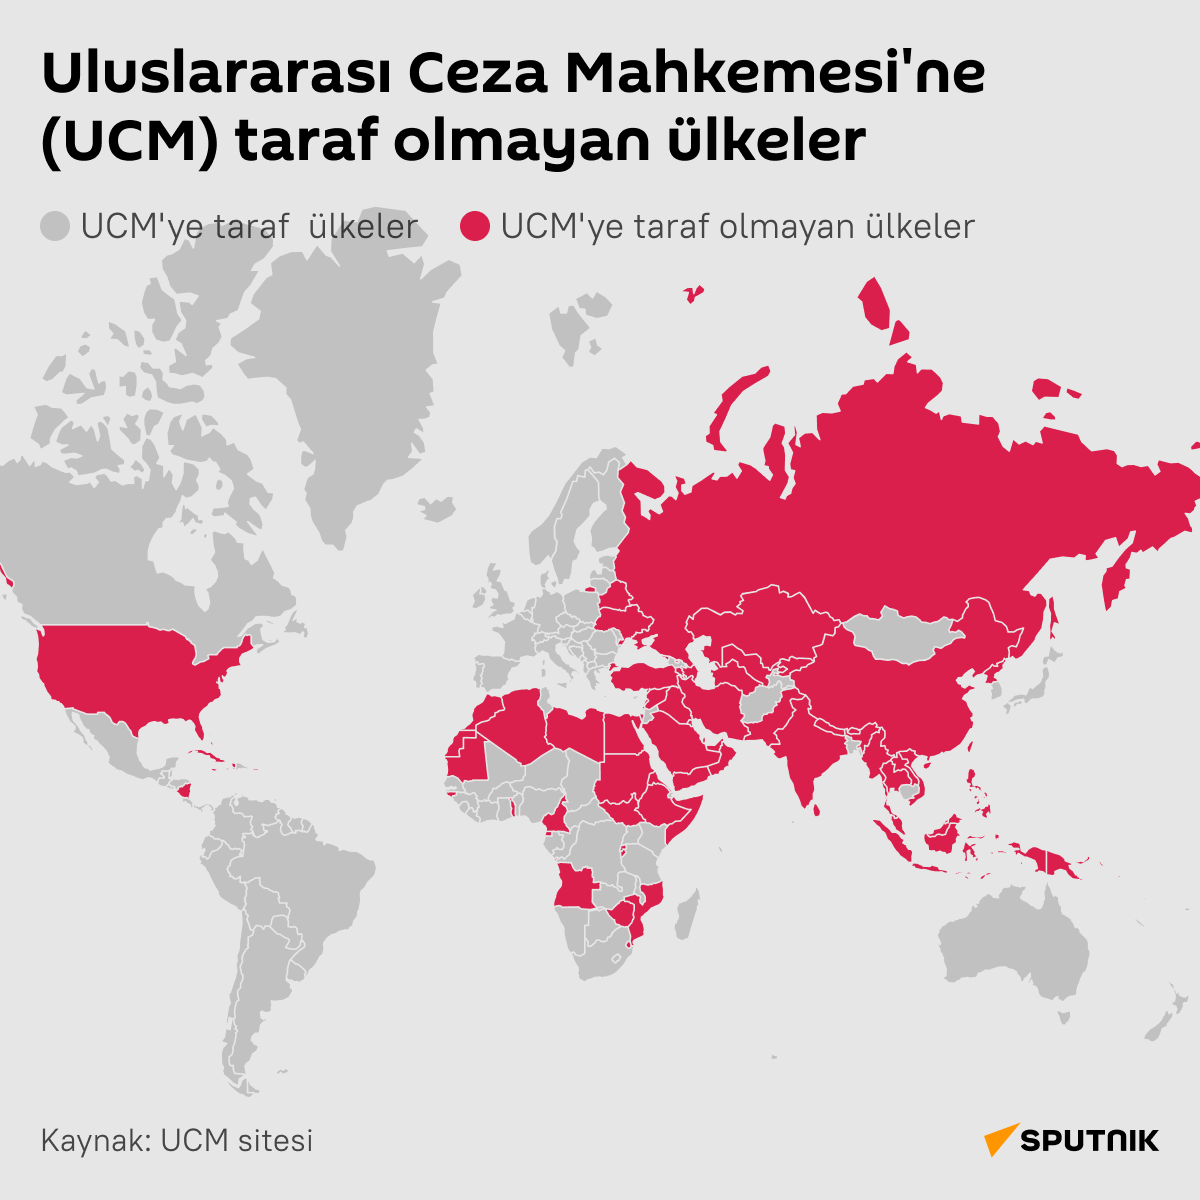 İnfografik Uluslararası Ceza Mahkemesi’ne (UCM) taraf olmayan ülkeler  - Sputnik Türkiye